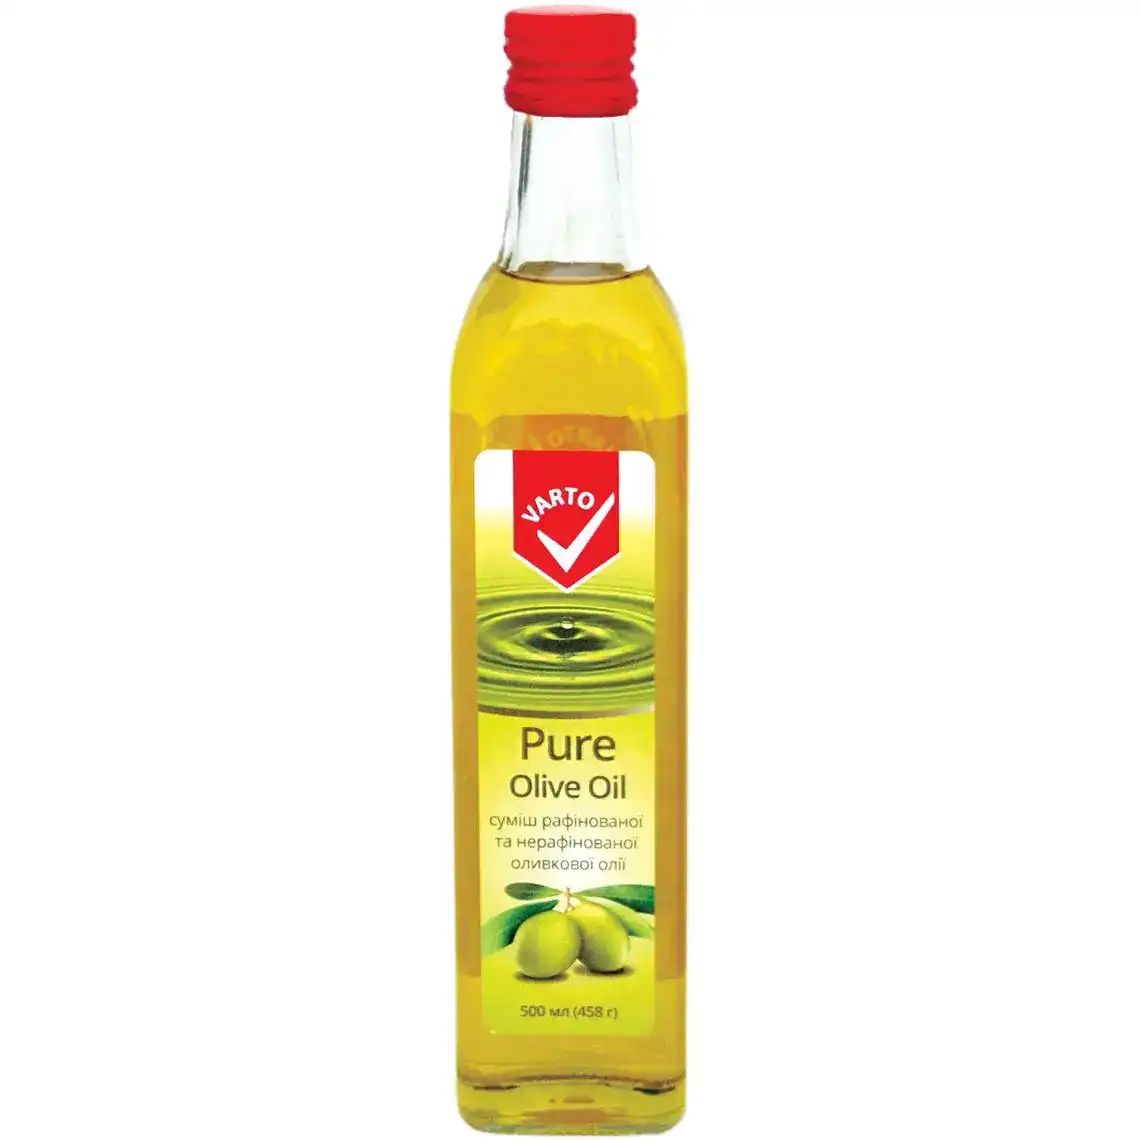 Оливкова олія Varto Pure суміш рафінованої та нерафінованої олії 500 мл